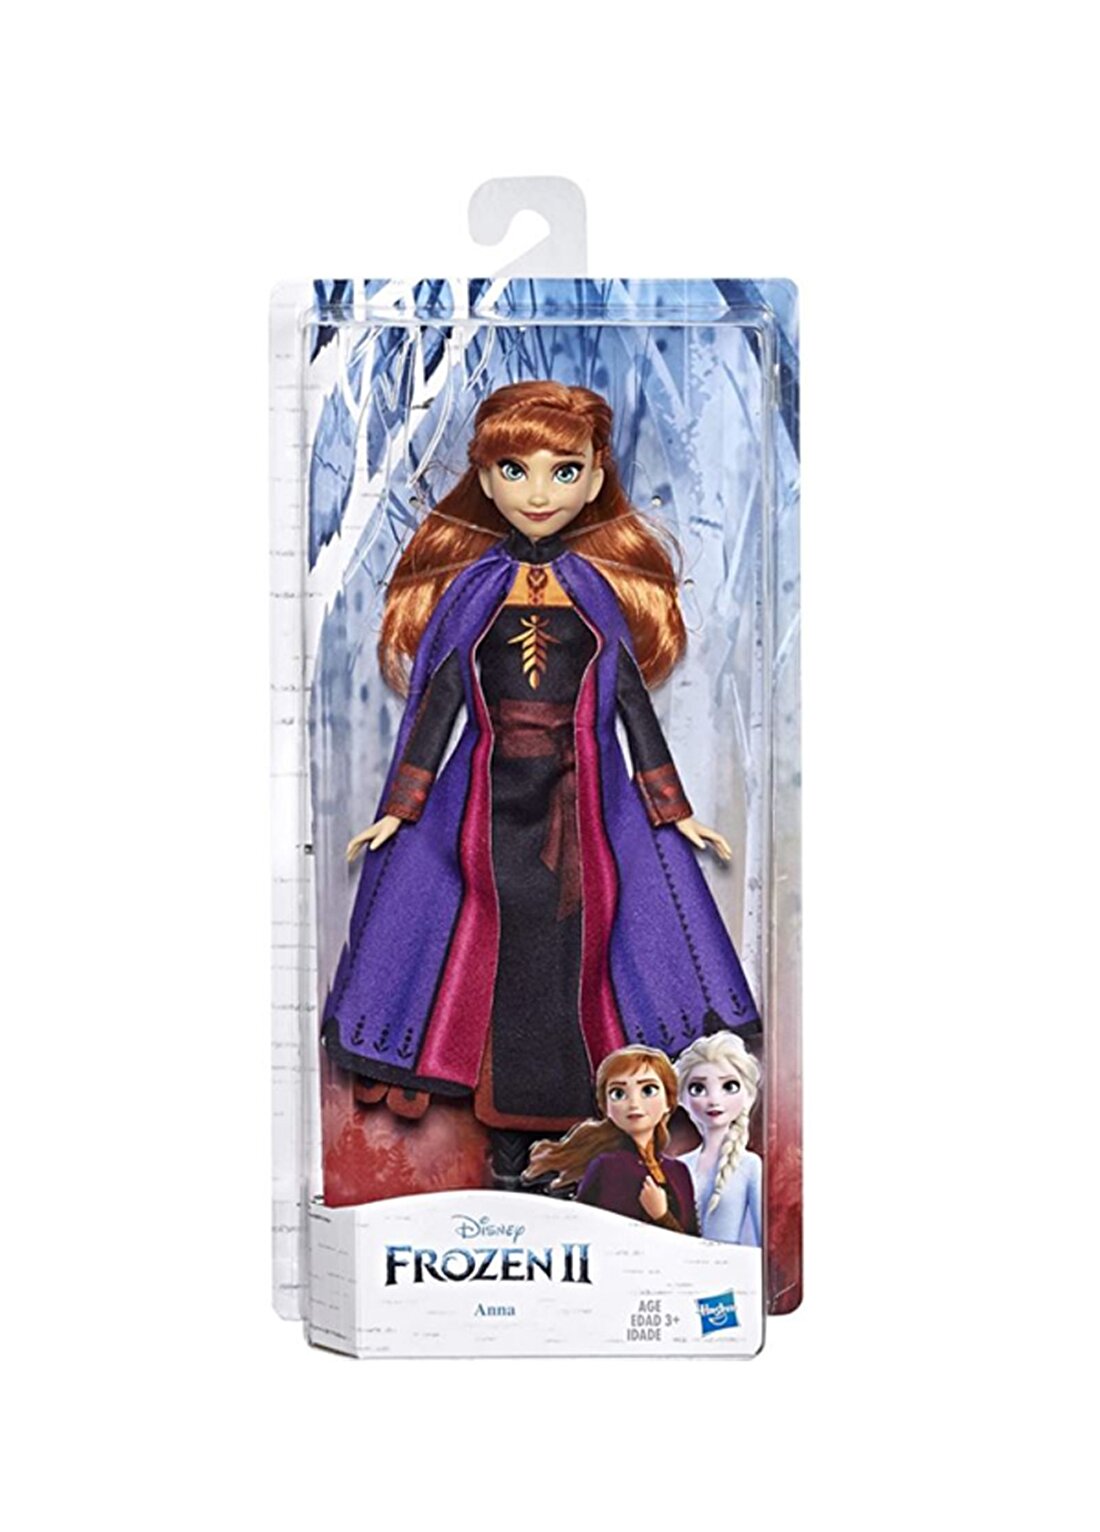 Frozen 2 Opp Character Anna